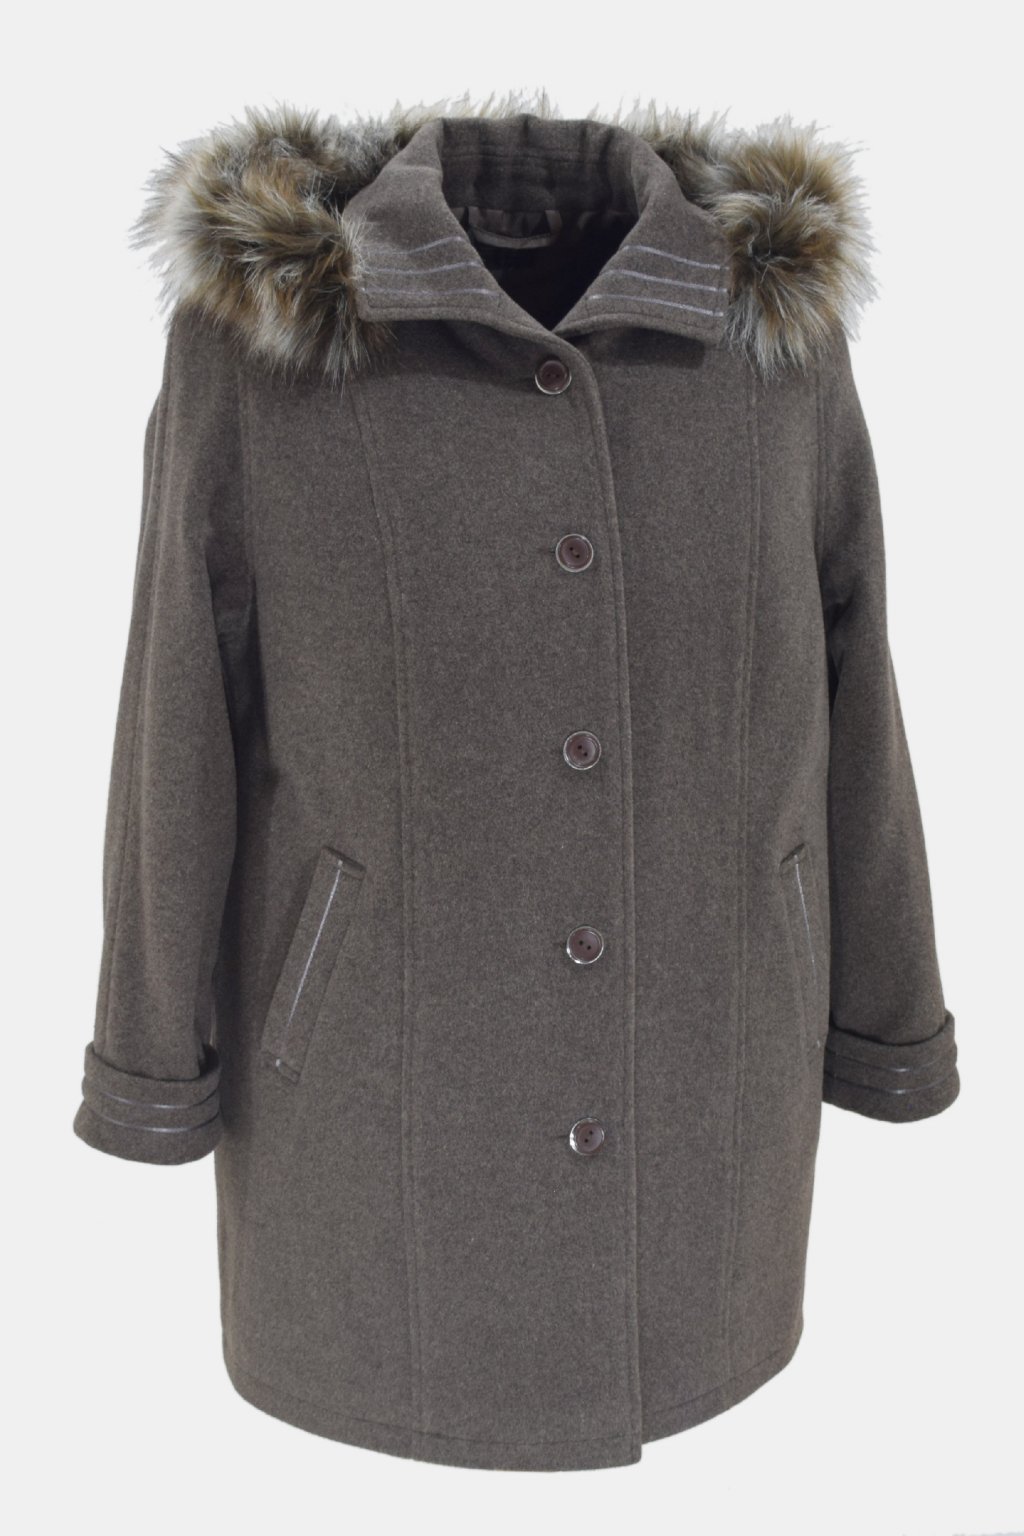 Dámský oříškový zimní kabát Renata nadměrné velikosti.